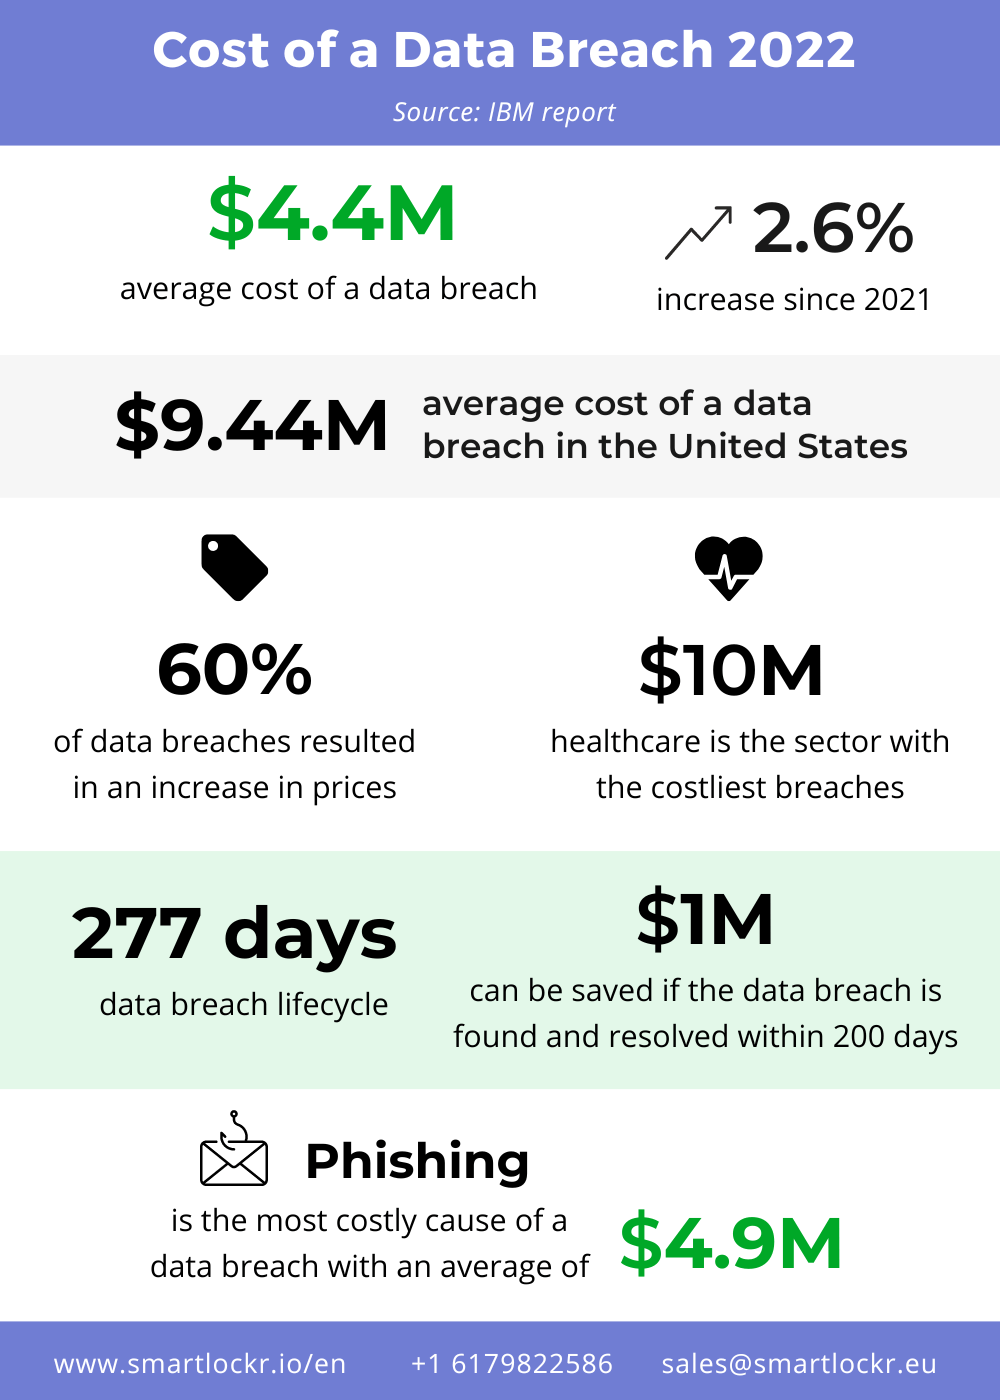 The cost of a data breach? On average, 4.4 million per organization